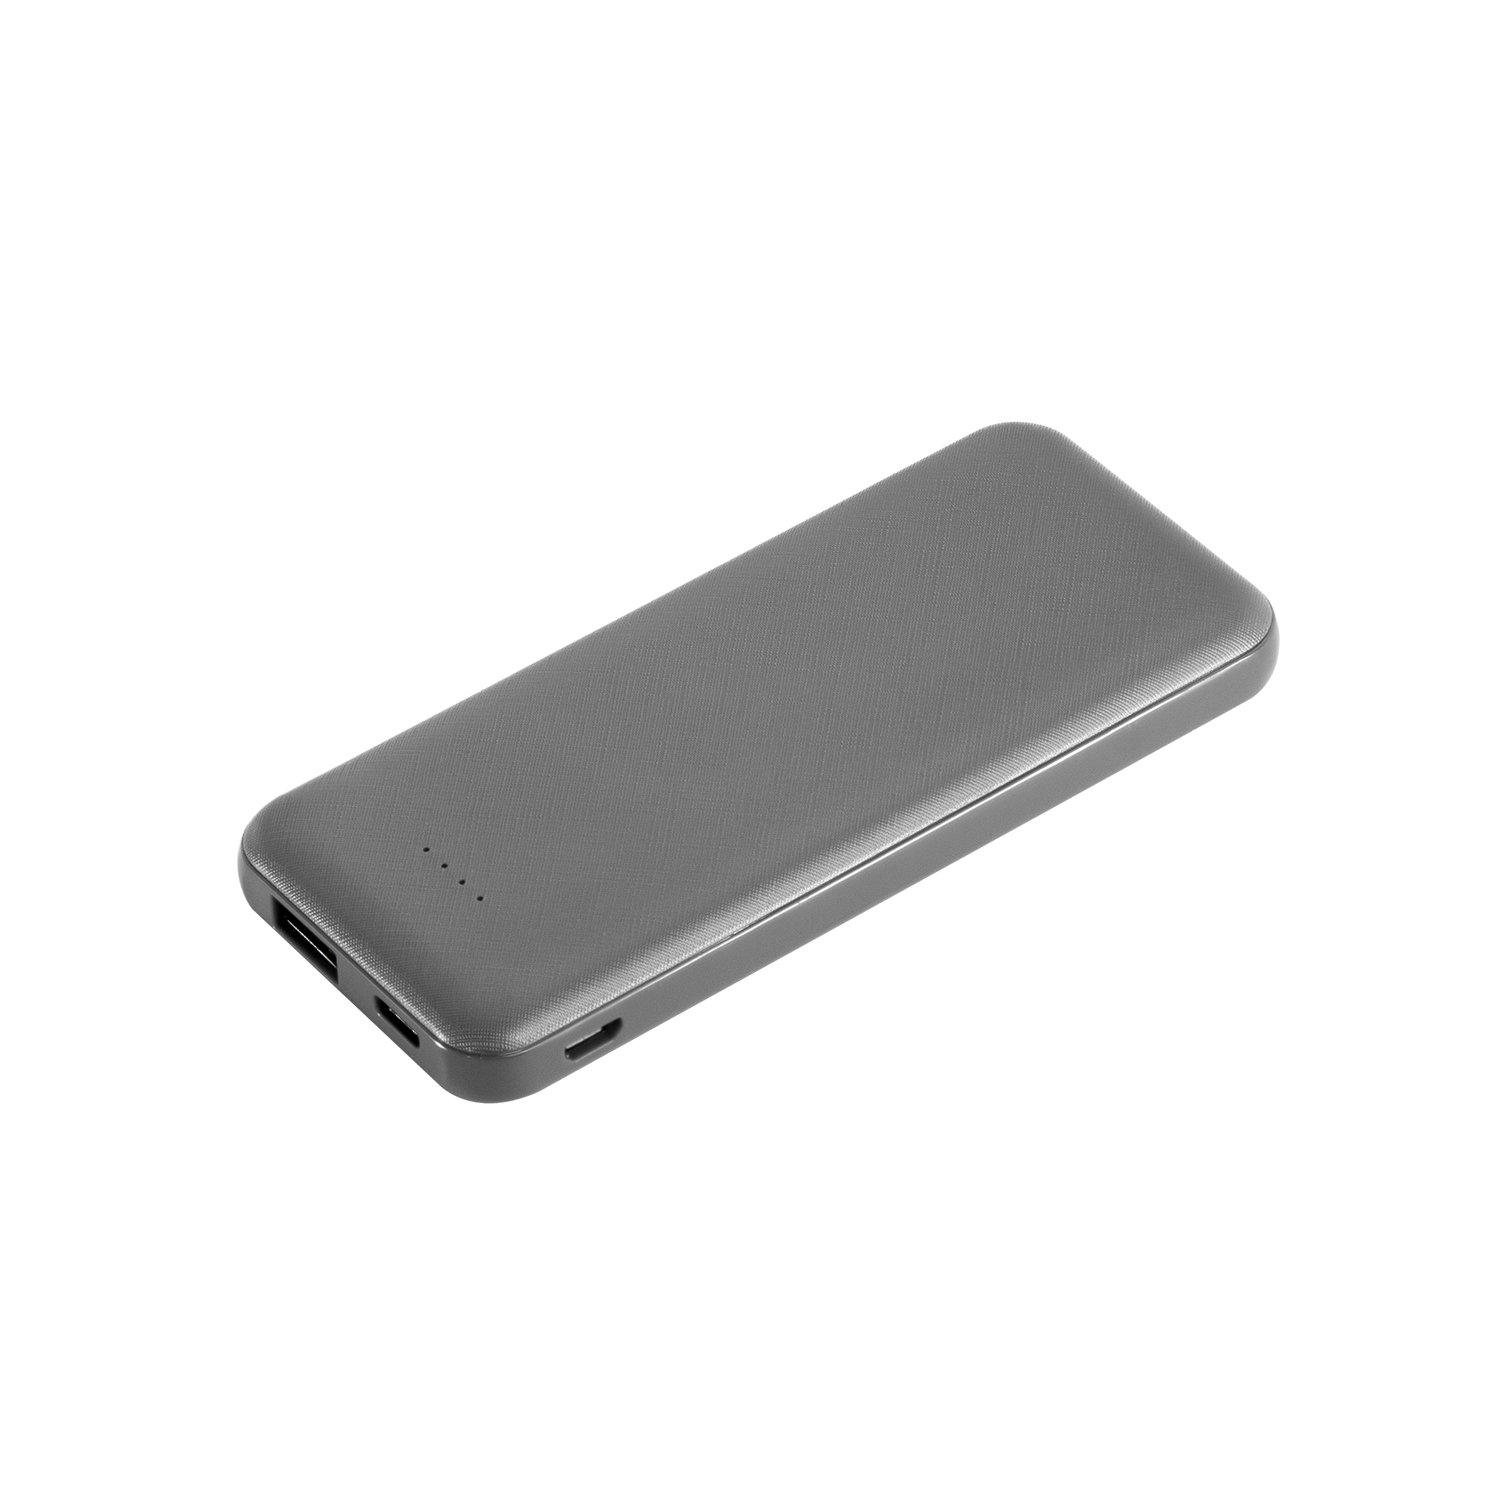 Артикул: A32011.080 — Внешний аккумулятор, Avis PB, 5000 mAh, серый